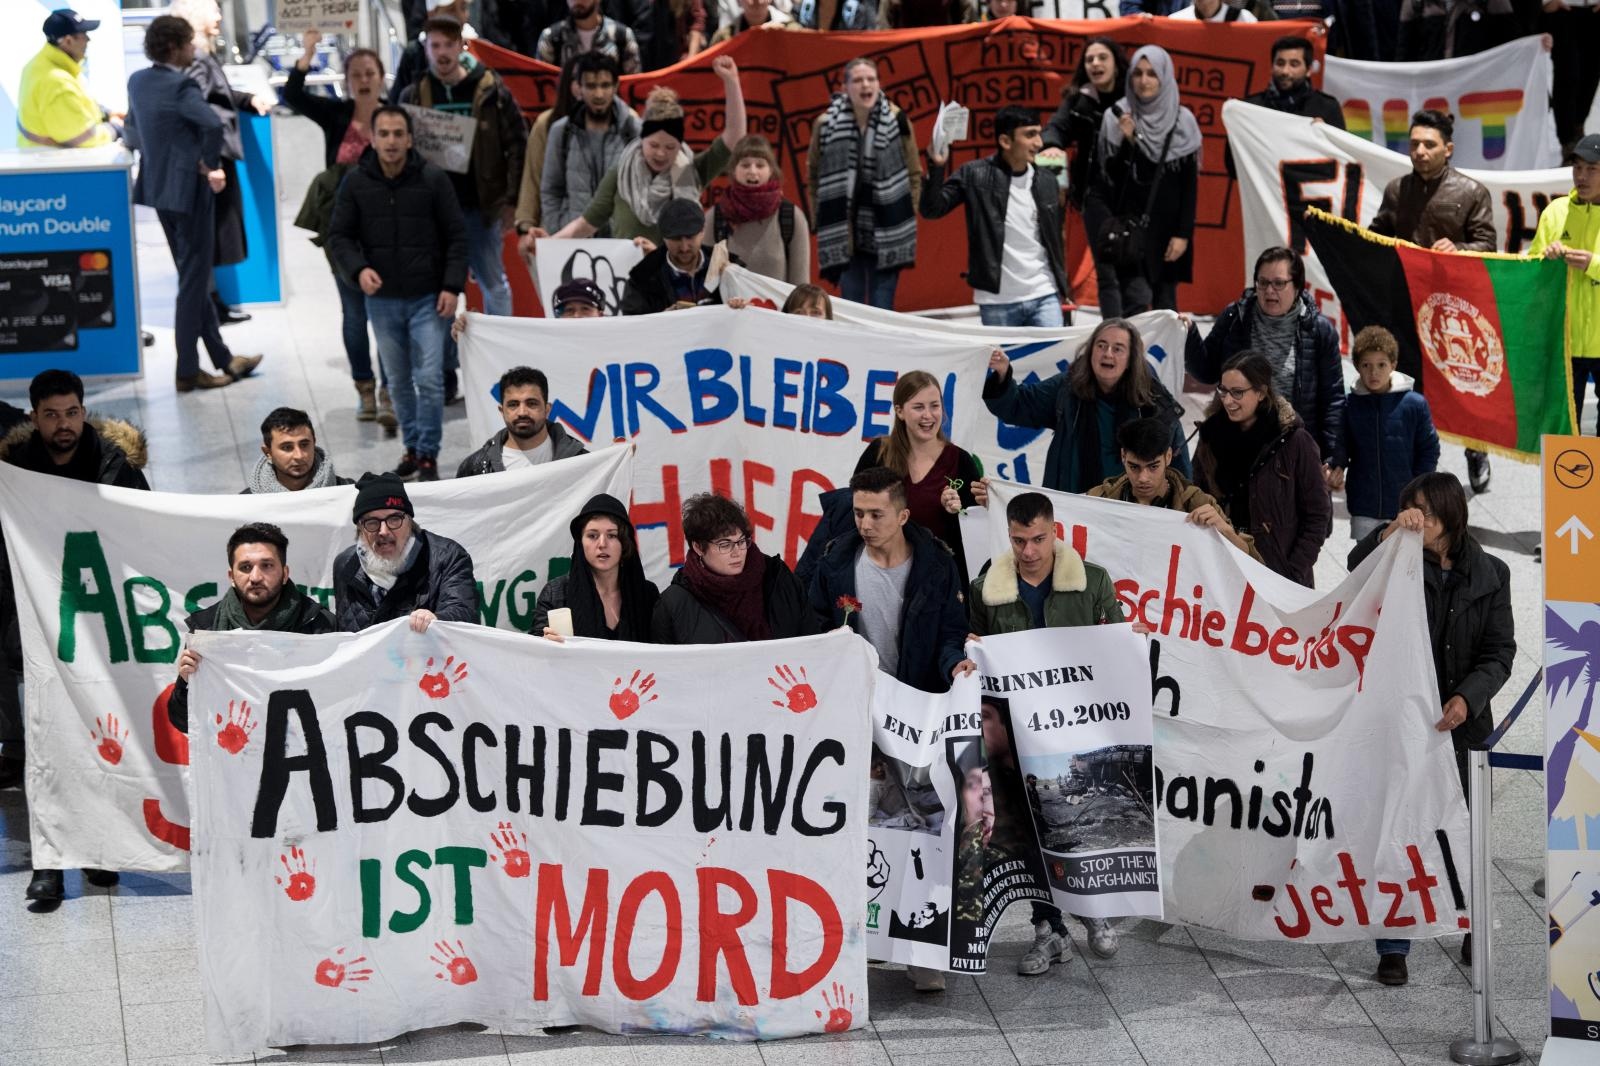 Protesti proti deportacijam - Frankfurtsko letališče Vir:Pixell